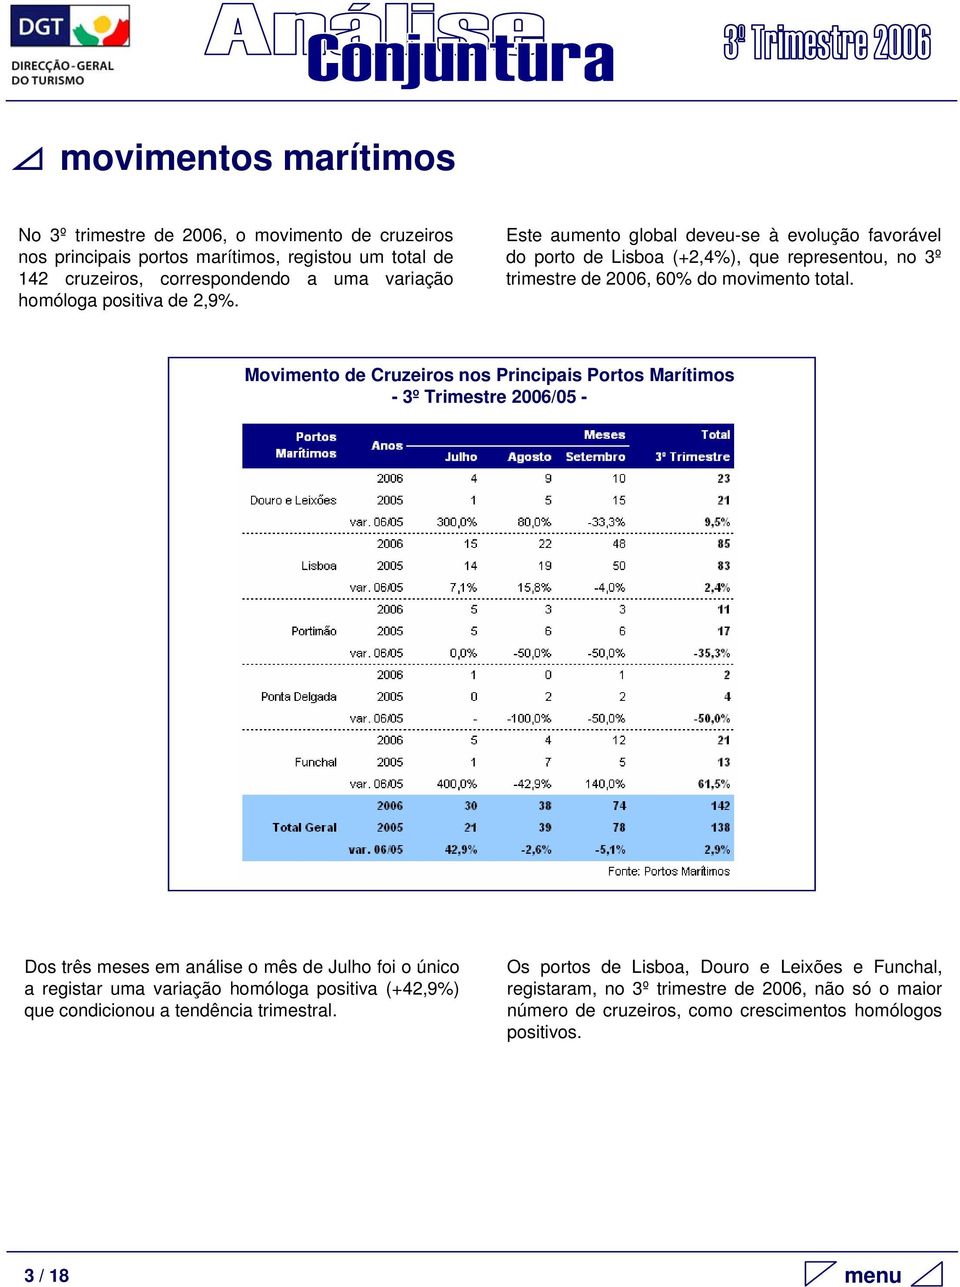 Movimento de Cruzeiros nos Principais Portos Marítimos - 3º Trimestre 2006/05 - Dos três meses em análise o mês de Julho foi o único a registar uma variação homóloga positiva